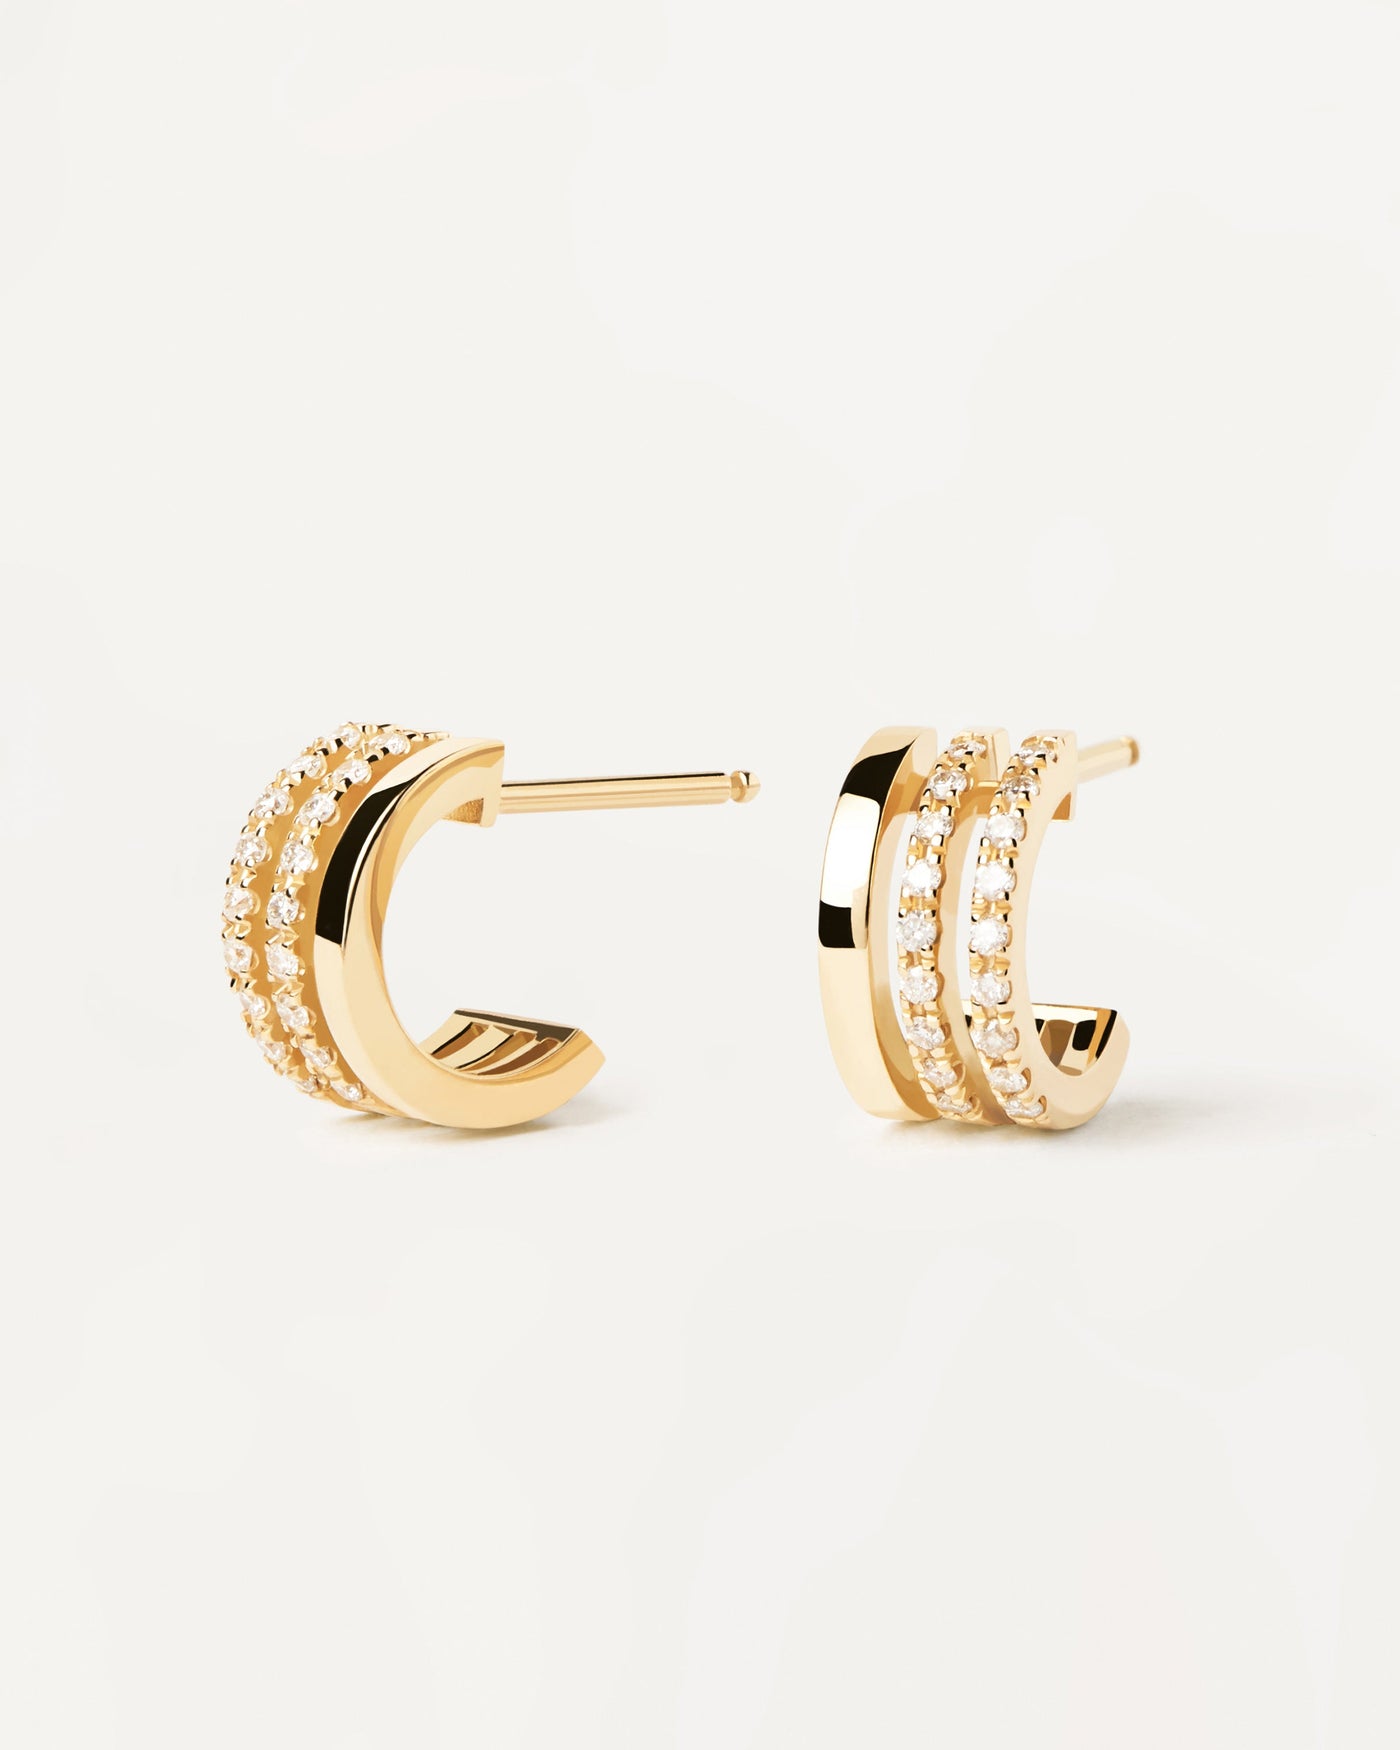 Dreifach-GoldCreolen mit Diamanten. Massivem gelbgold-Ohrringe mit 3 Halbreifen: einer glatt und zwei mit laborgewachsenen Diamanten von 0,18 Karat. Erhalten Sie die neuesten Produkte von PDPAOLA. Geben Sie Ihre Bestellung sicher auf und erhalten Sie diesen Bestseller.